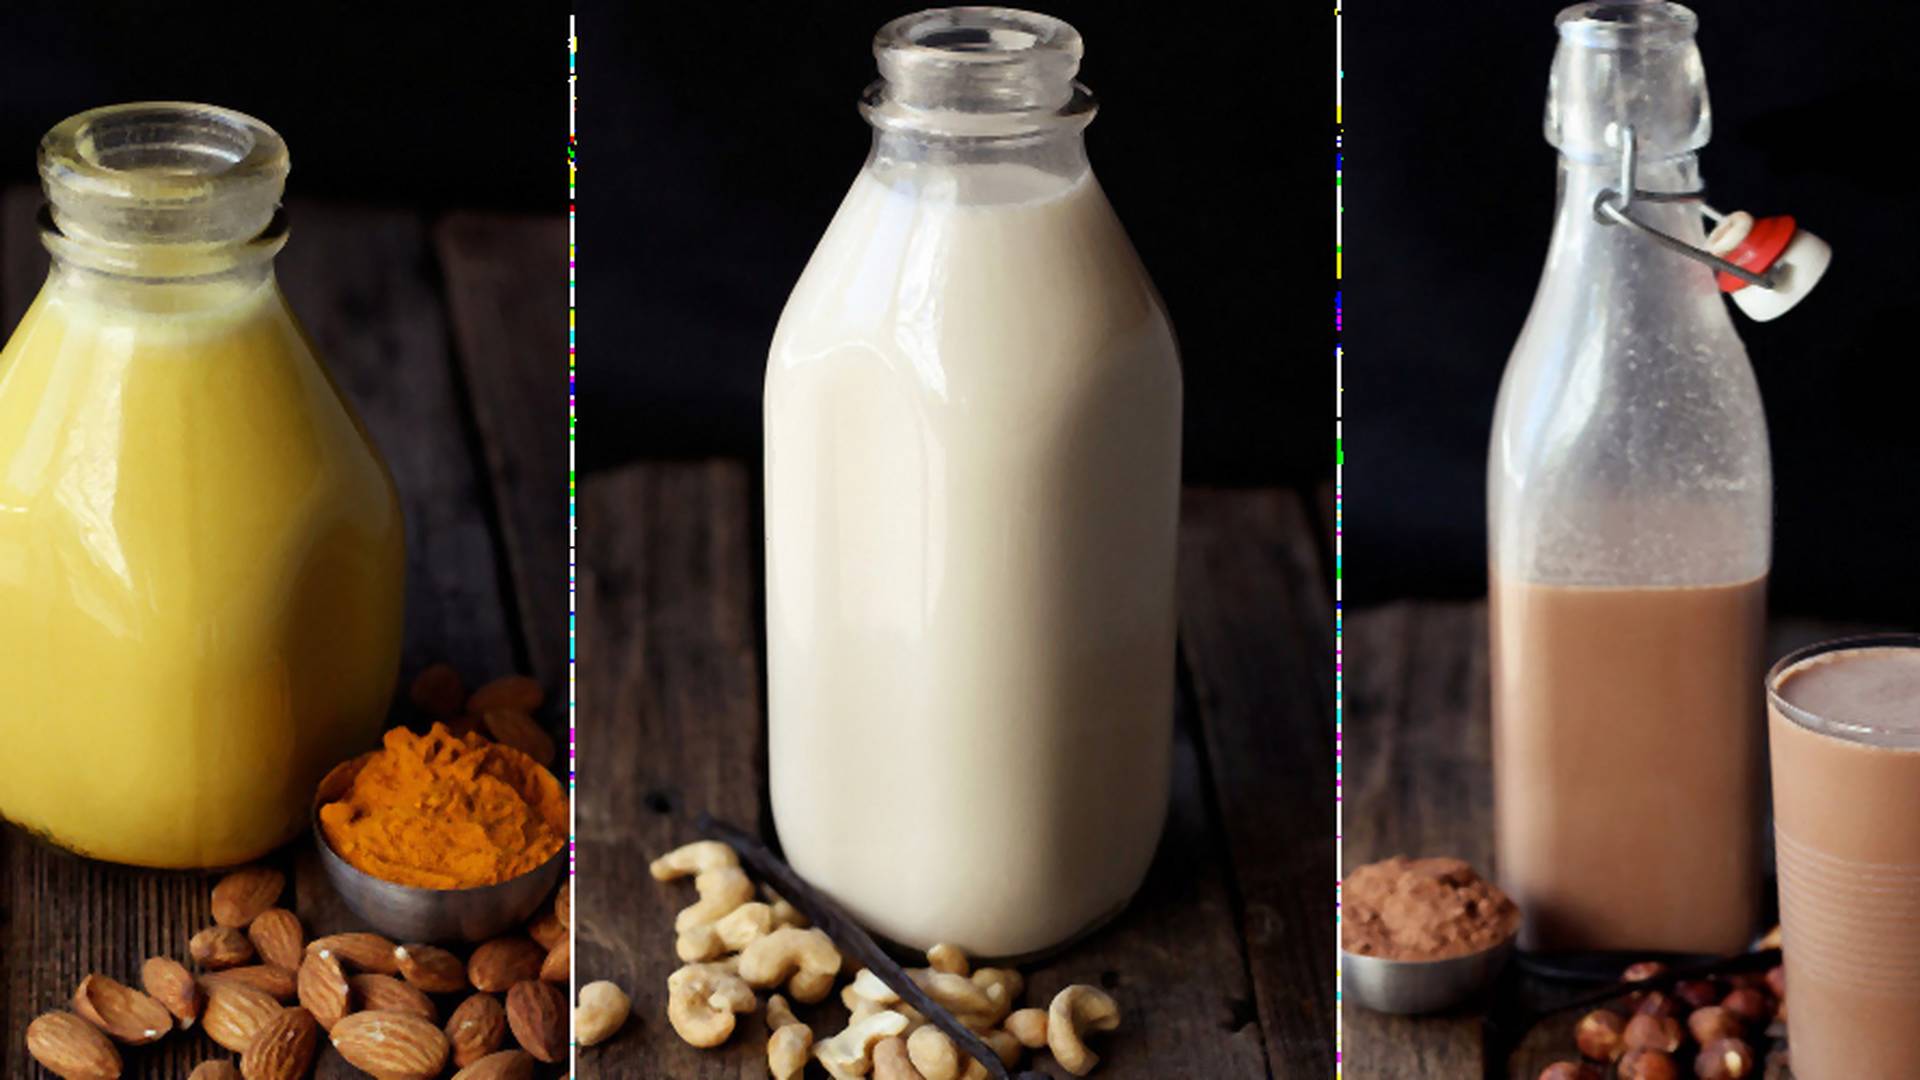 Domowe mleko orzechowe bez laktozy, szczelnie zamknięte w buteleczce [migdały i laskowe]